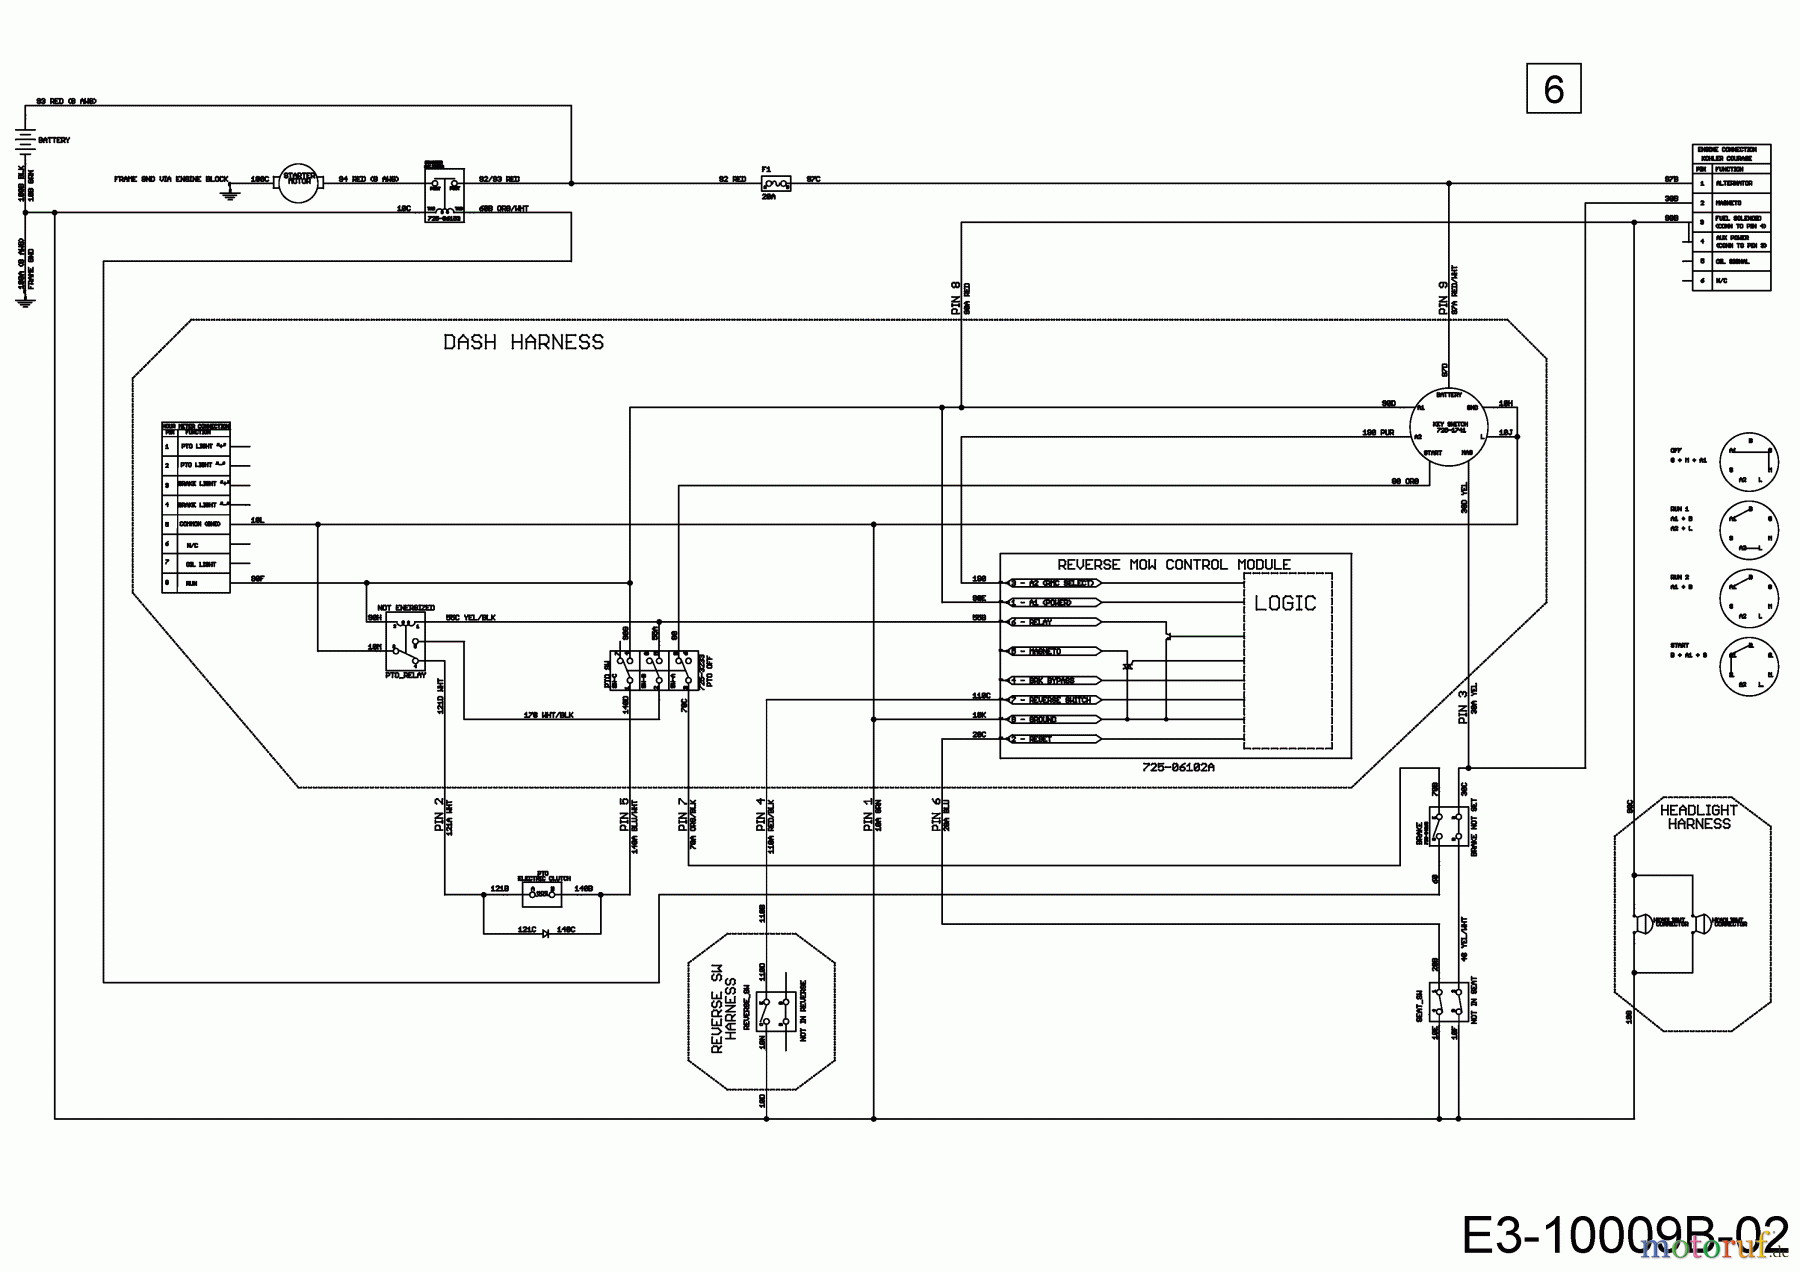  Cub Cadet Lawn tractors XT1 OS96 13A8A1CF603  (2018) Main wiring diagram